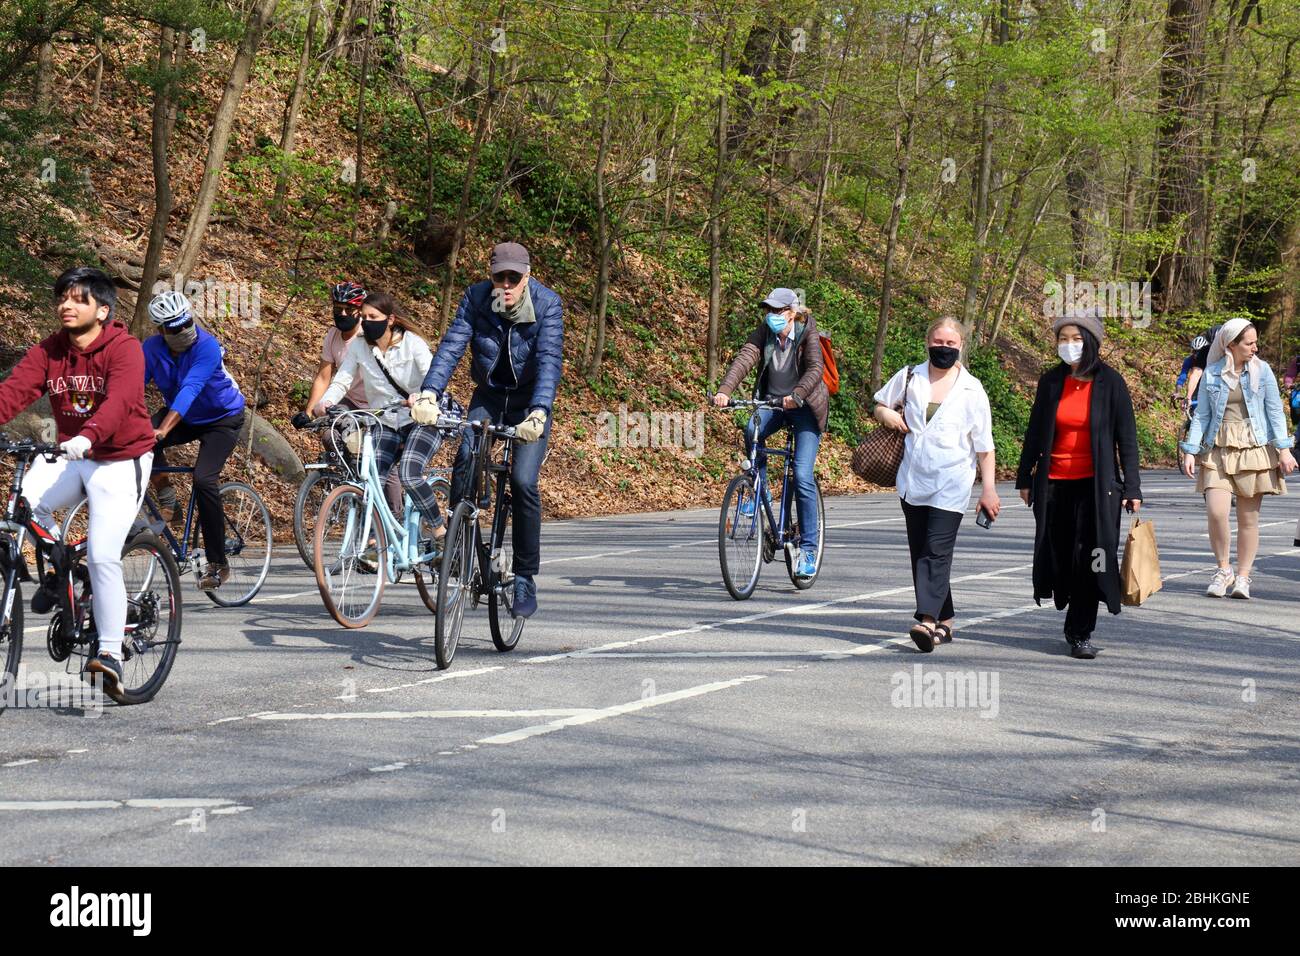 Les gens et les cyclistes, certains portant des masques, dans le parc Prospect, profitant d'un chaud samedi après-midi ensoleillé pendant le coronavirus, Brooklyn, NY, 25 avril 2020. Banque D'Images